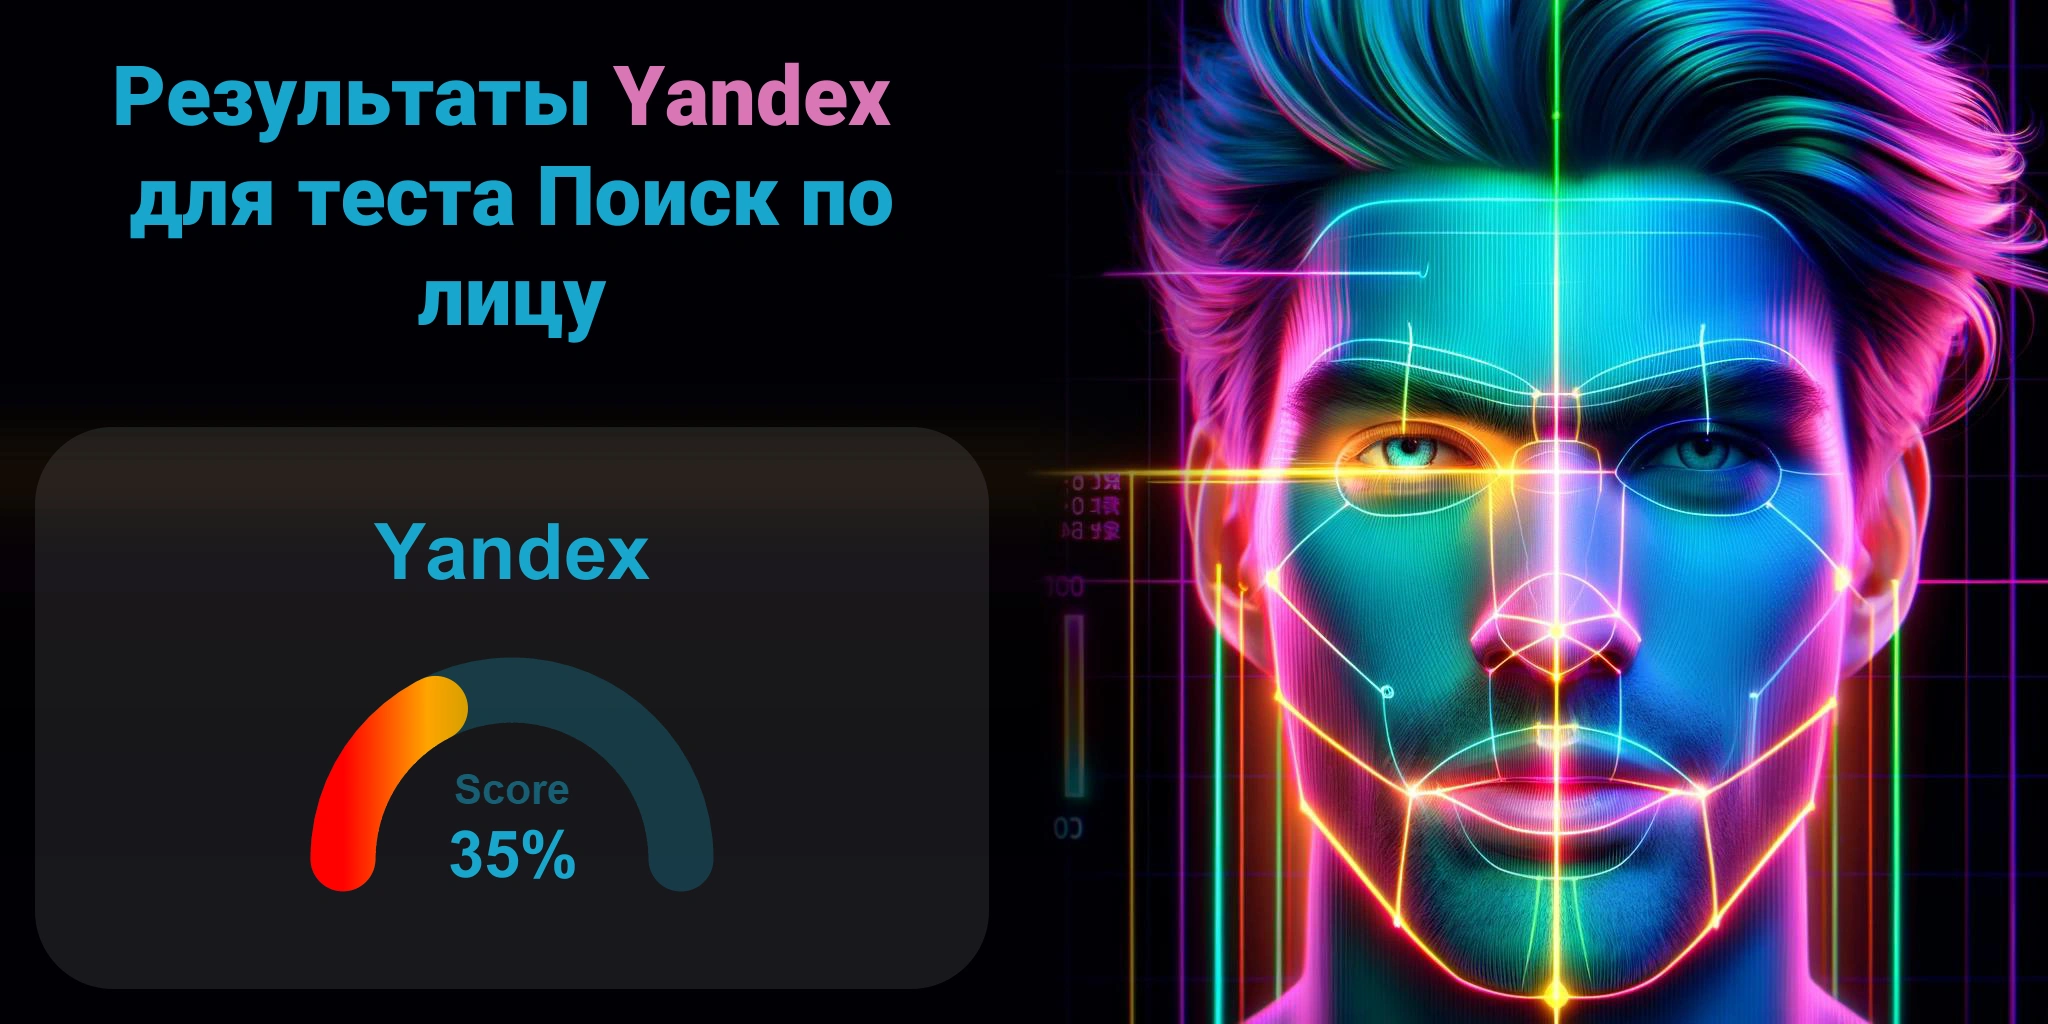 Является ли Yandex лучшим для поиска по лицам?